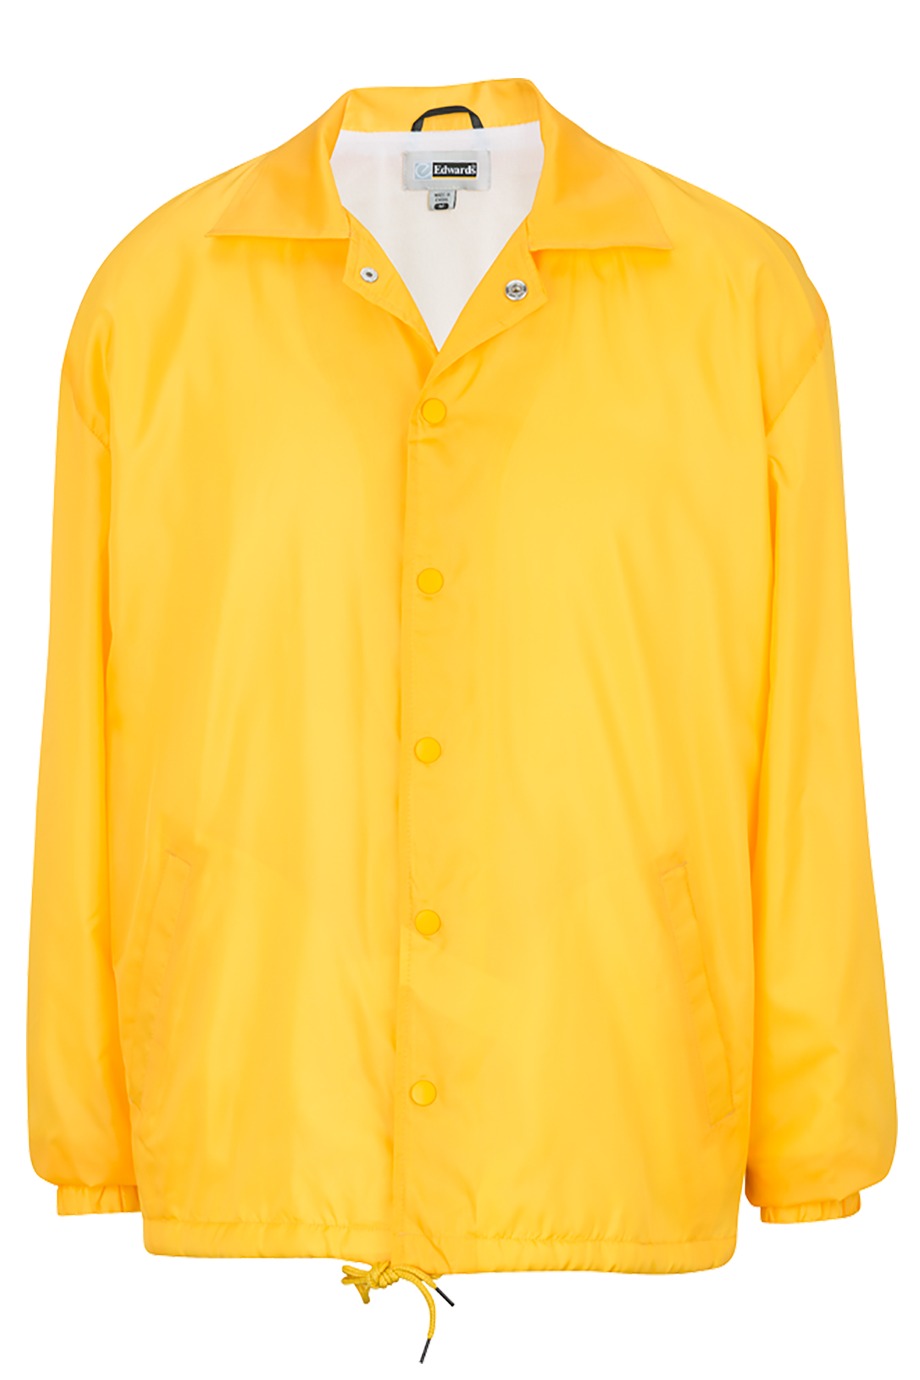 Edwards Garment 3430 - Unisex Coach's Jacket